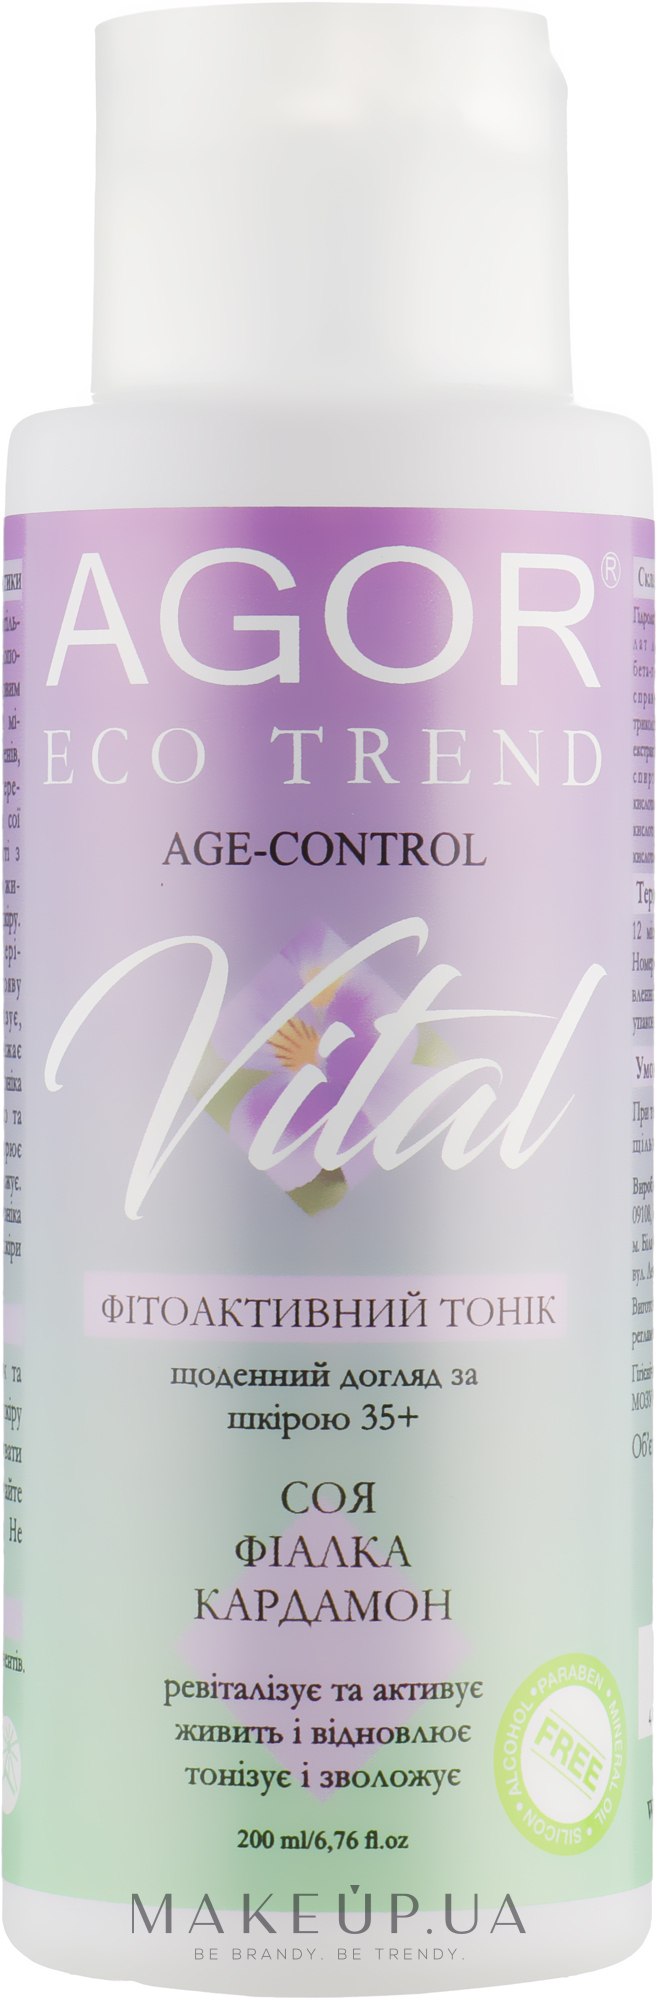 Фітоактивний тонік для шкіри 35+ - Agor Eco Trend Facial Tonic Vital — фото 200ml